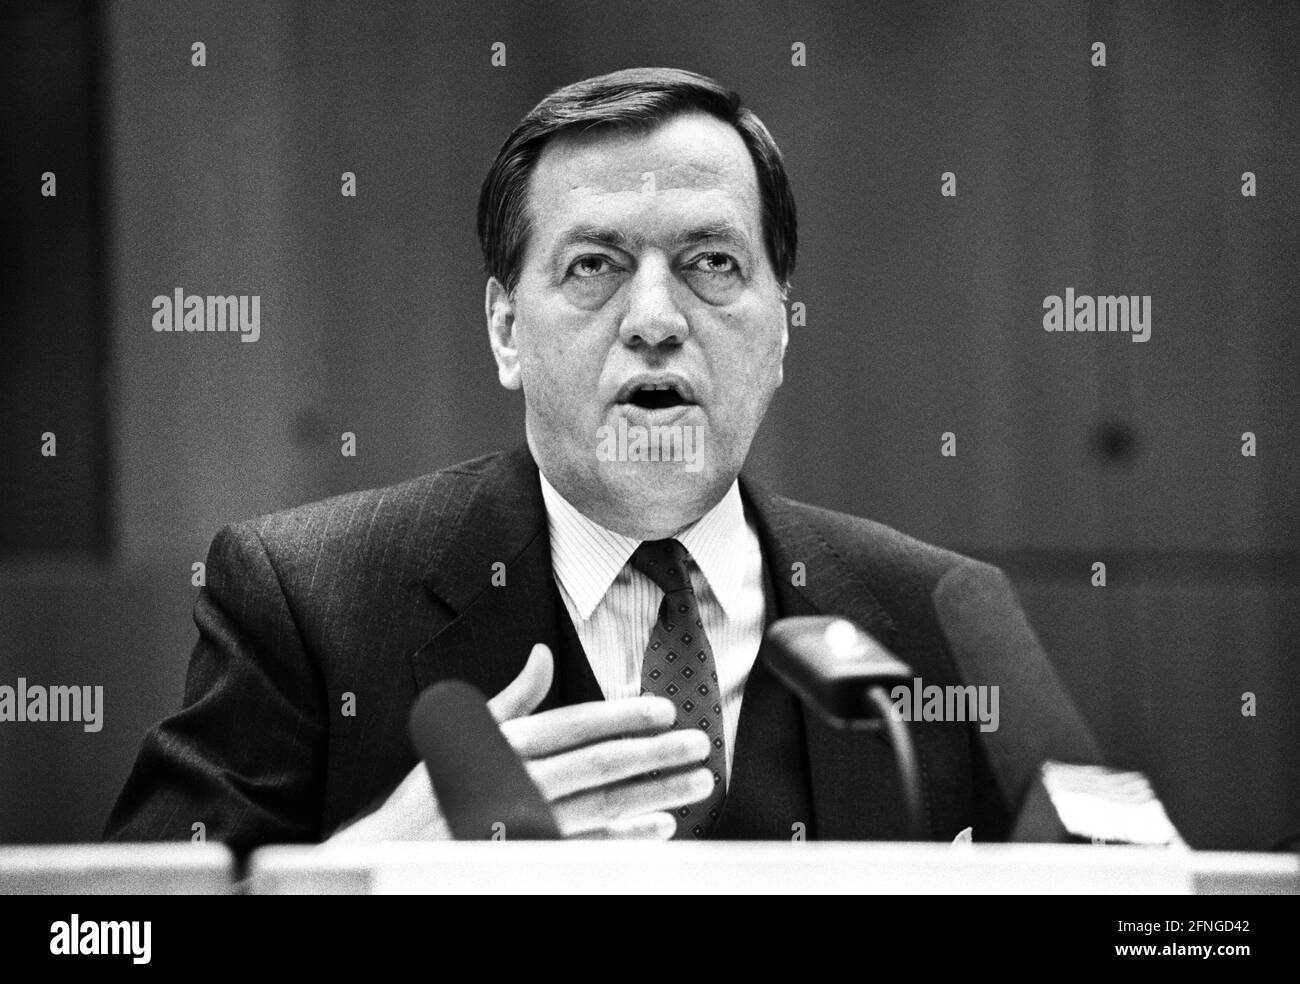 Allemagne, Francfort, 29.03.1990. Archive No.: 15-4-37 Conférence de presse annuelle de la Deutsche Bank photo: Hilmar Kopper, Président du Conseil d'Administration [traduction automatique] Banque D'Images